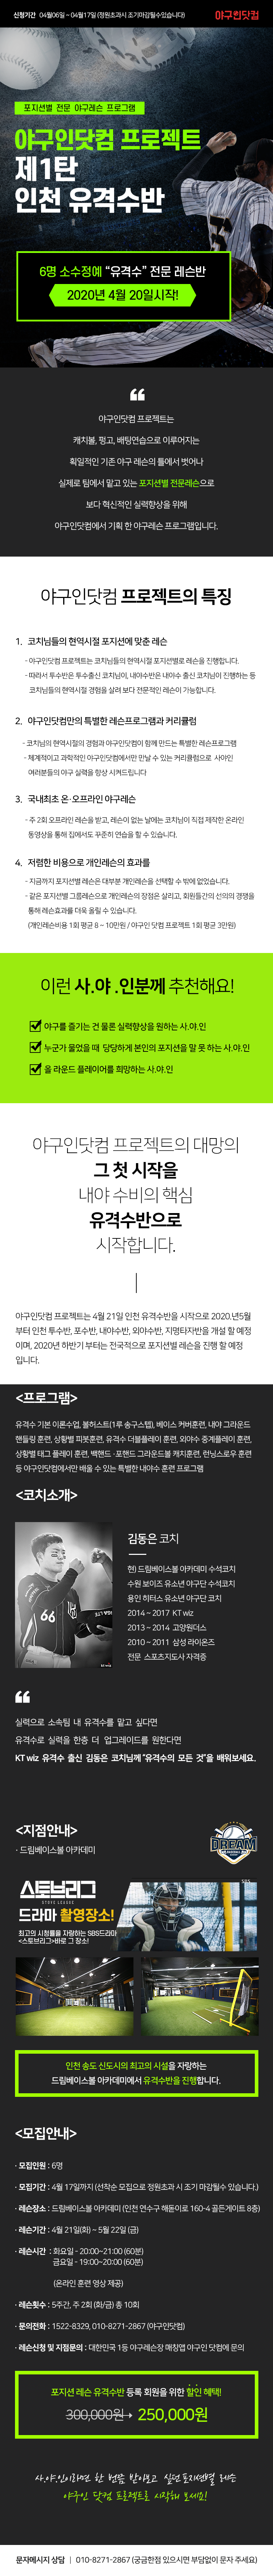 야구인닷컴프로젝트(야프, 최종수정본).png